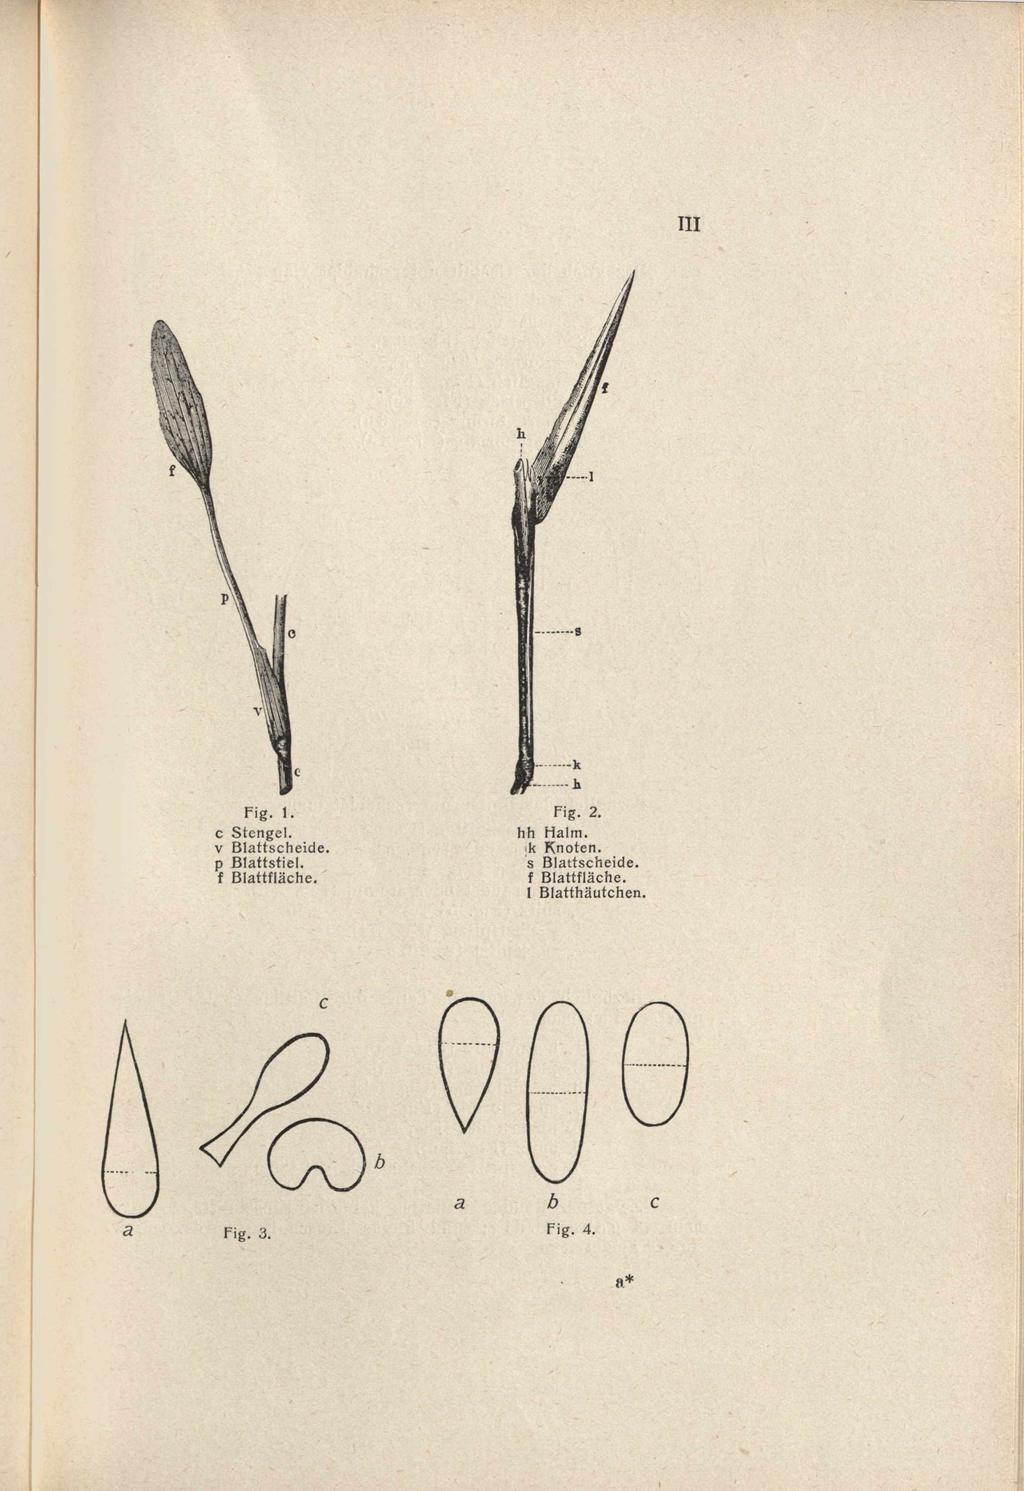 Fig. 1. c Stengel, v Blattscheide, p Blattstiel, f Blattfläche. Fig.